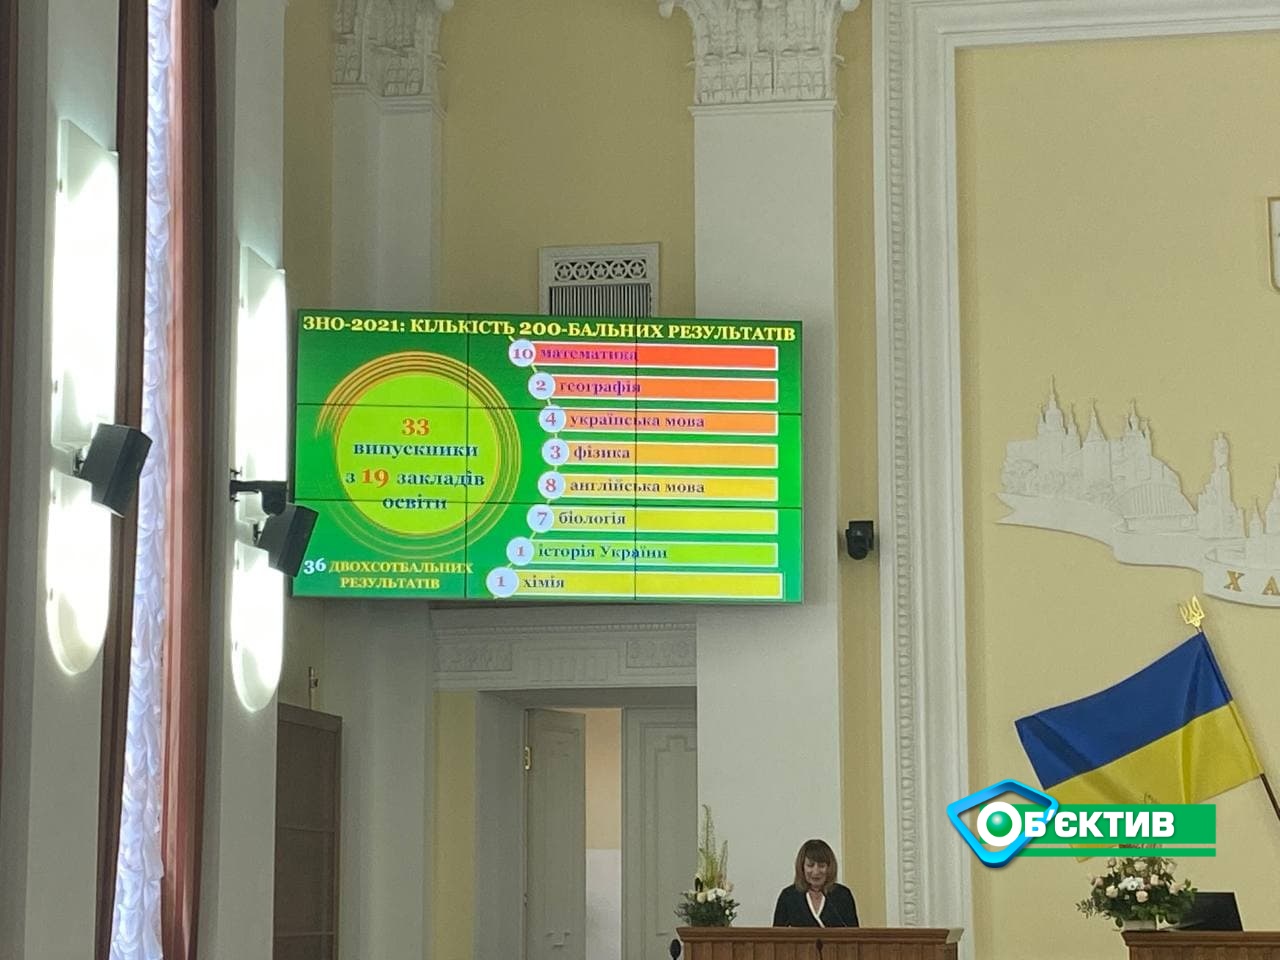 ВНО на 200: в Харькове наградили учеников, получивших наивысшие баллы (фото)